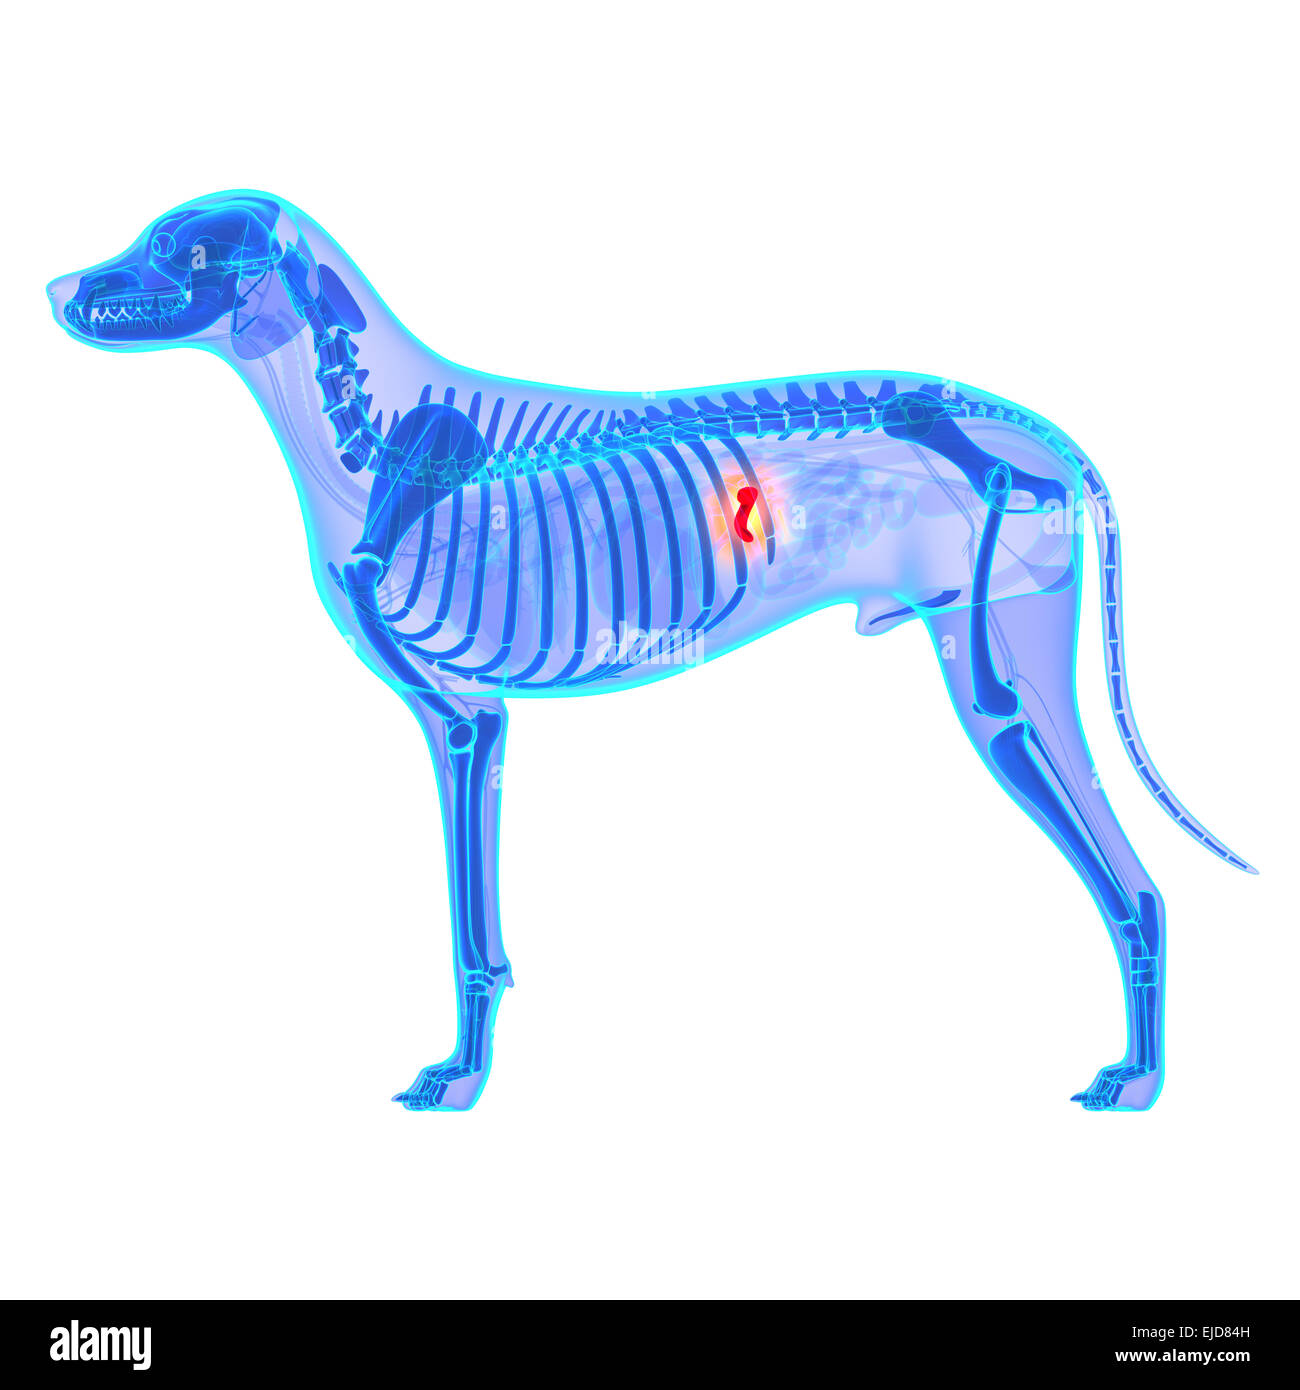 Cane anatomia della colecisti - Canis lupus Familiaris anatomia - isolato su bianco Foto Stock